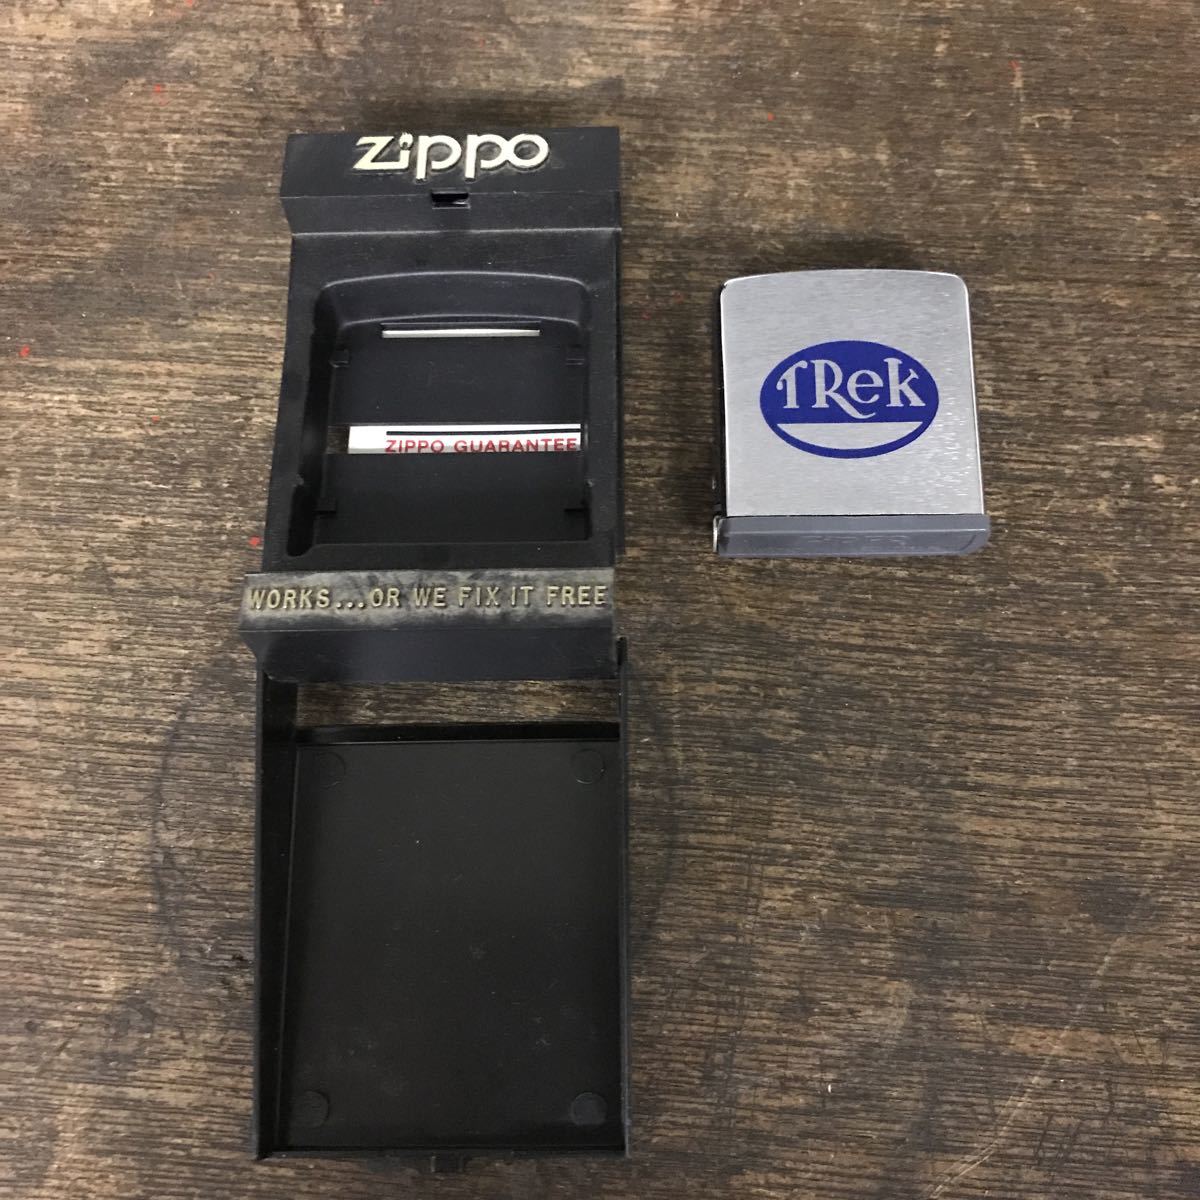 Zippo Zippo TRek Major case attaching collection 